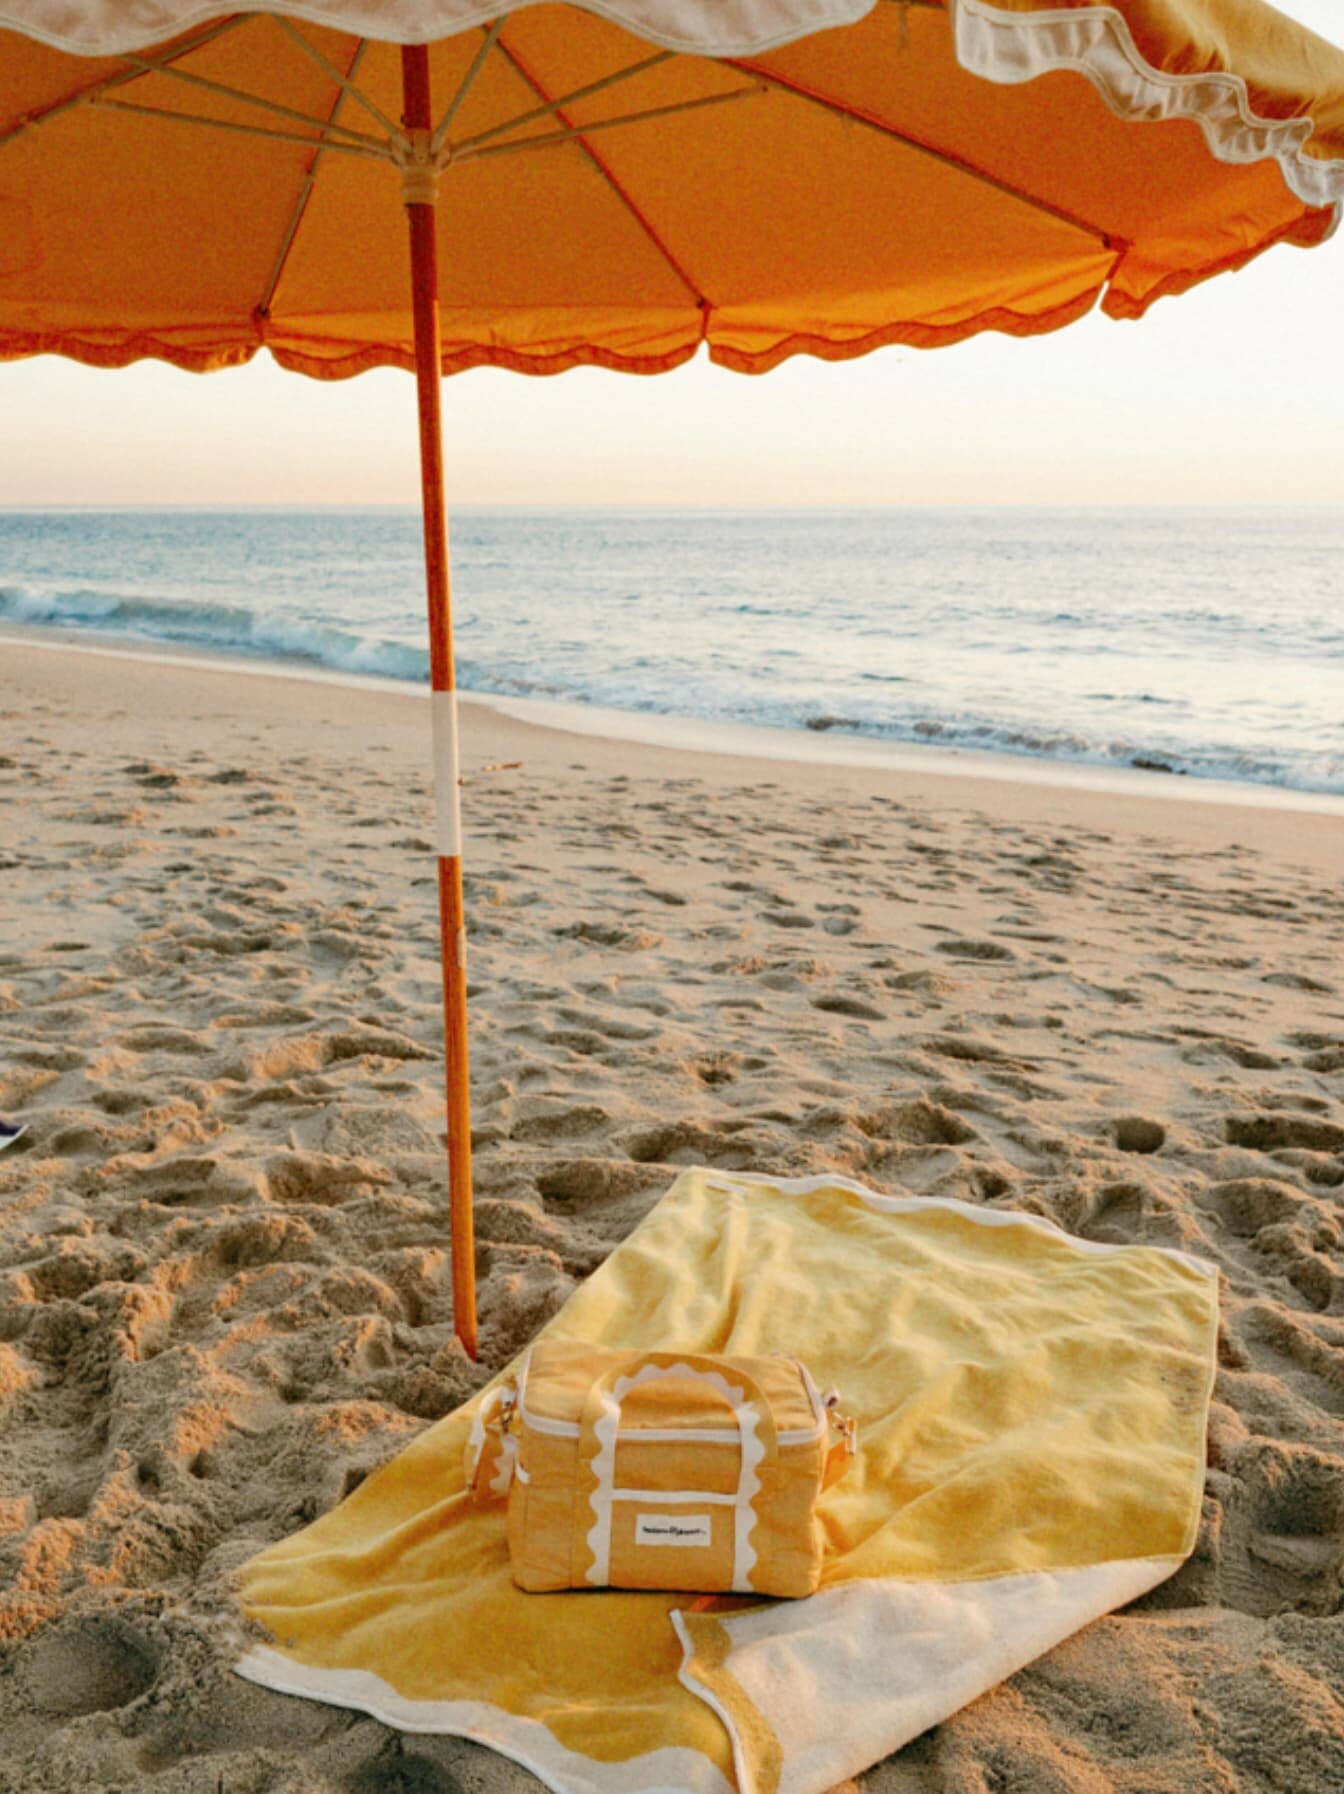 The Premium Cooler Bag - Rivie Mimosa Premium Cooler Bag Business & Pleasure Co Aus 